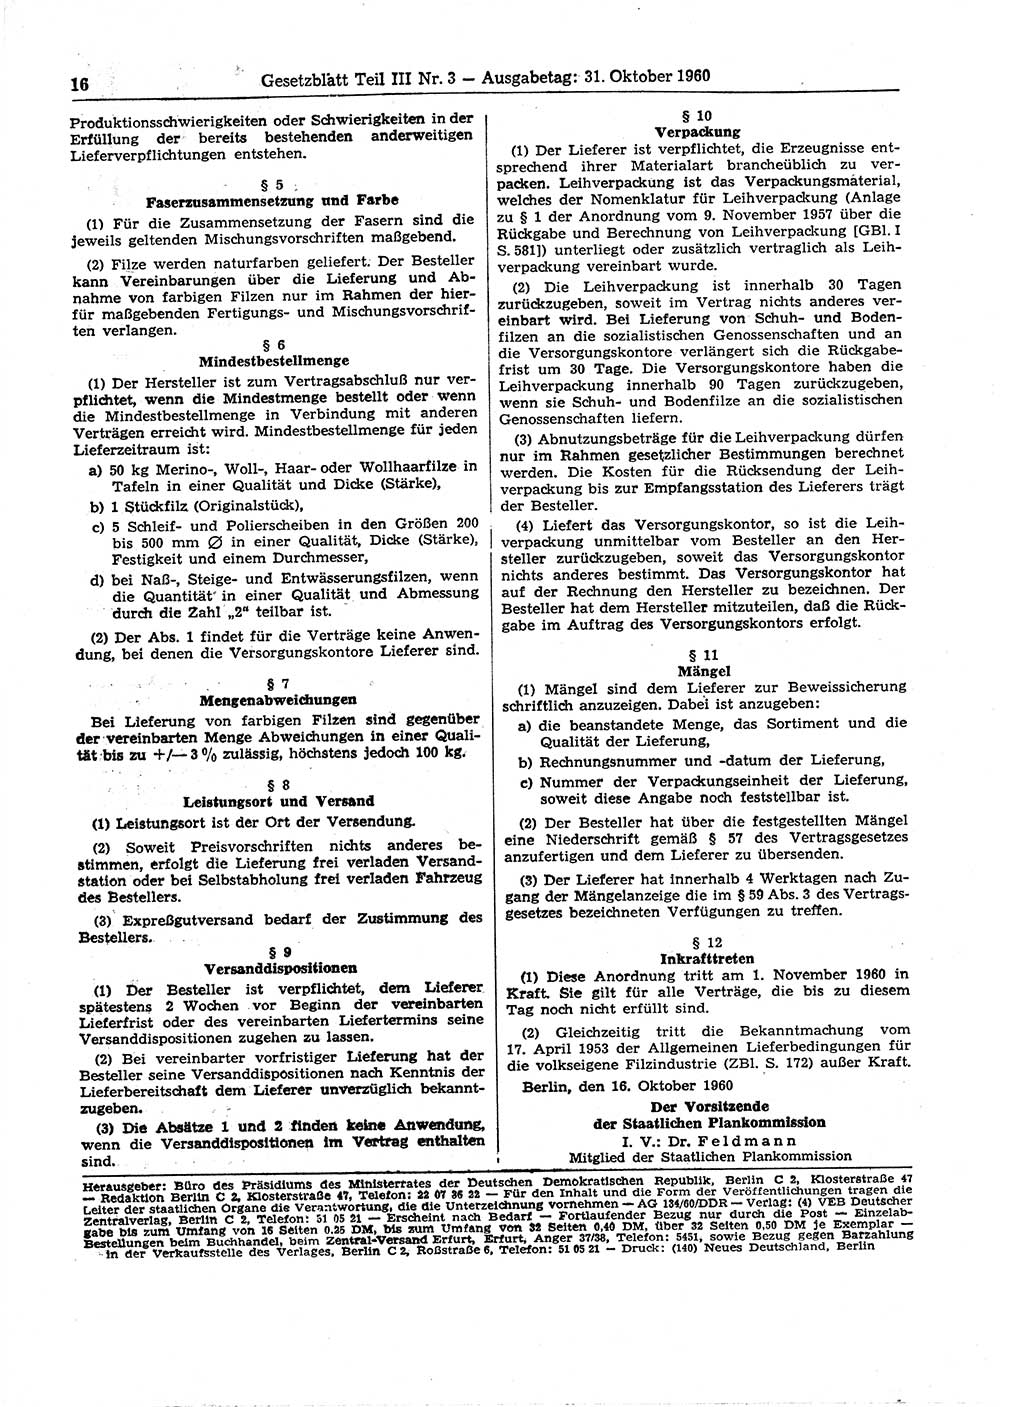 Gesetzblatt (GBl.) der Deutschen Demokratischen Republik (DDR) Teil ⅠⅠⅠ 1960, Seite 16 (GBl. DDR ⅠⅠⅠ 1960, S. 16)